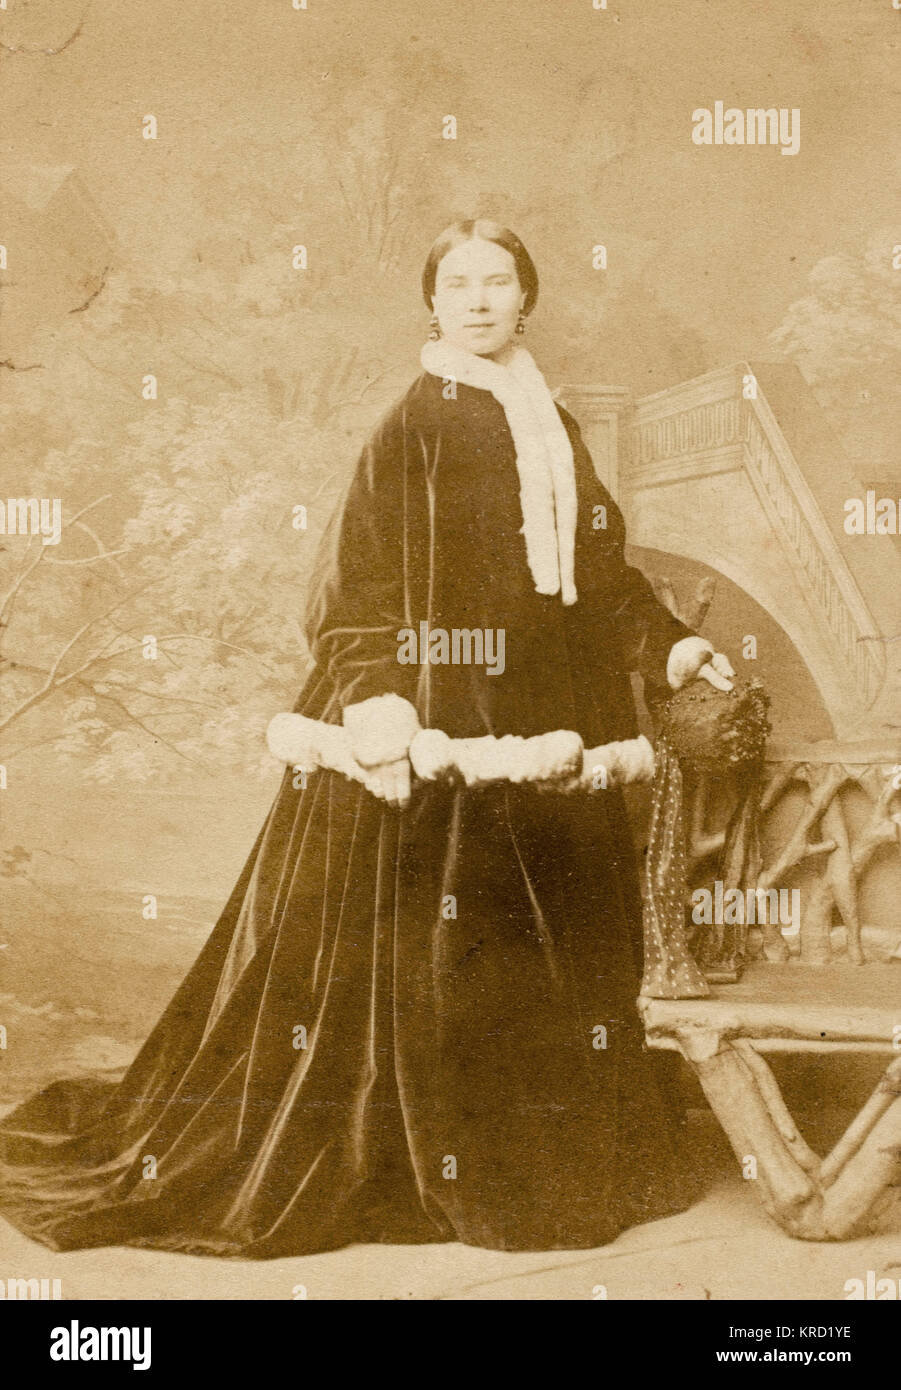 Una mujer victoriana en un oscuro traje exterior de terciopelo adornadas con piel blanca -- quizás un traje de Navidad. Visto aquí en un estudio de fotografía, de pie junto a un banco rústico. Fecha: circa 1860 Foto de stock